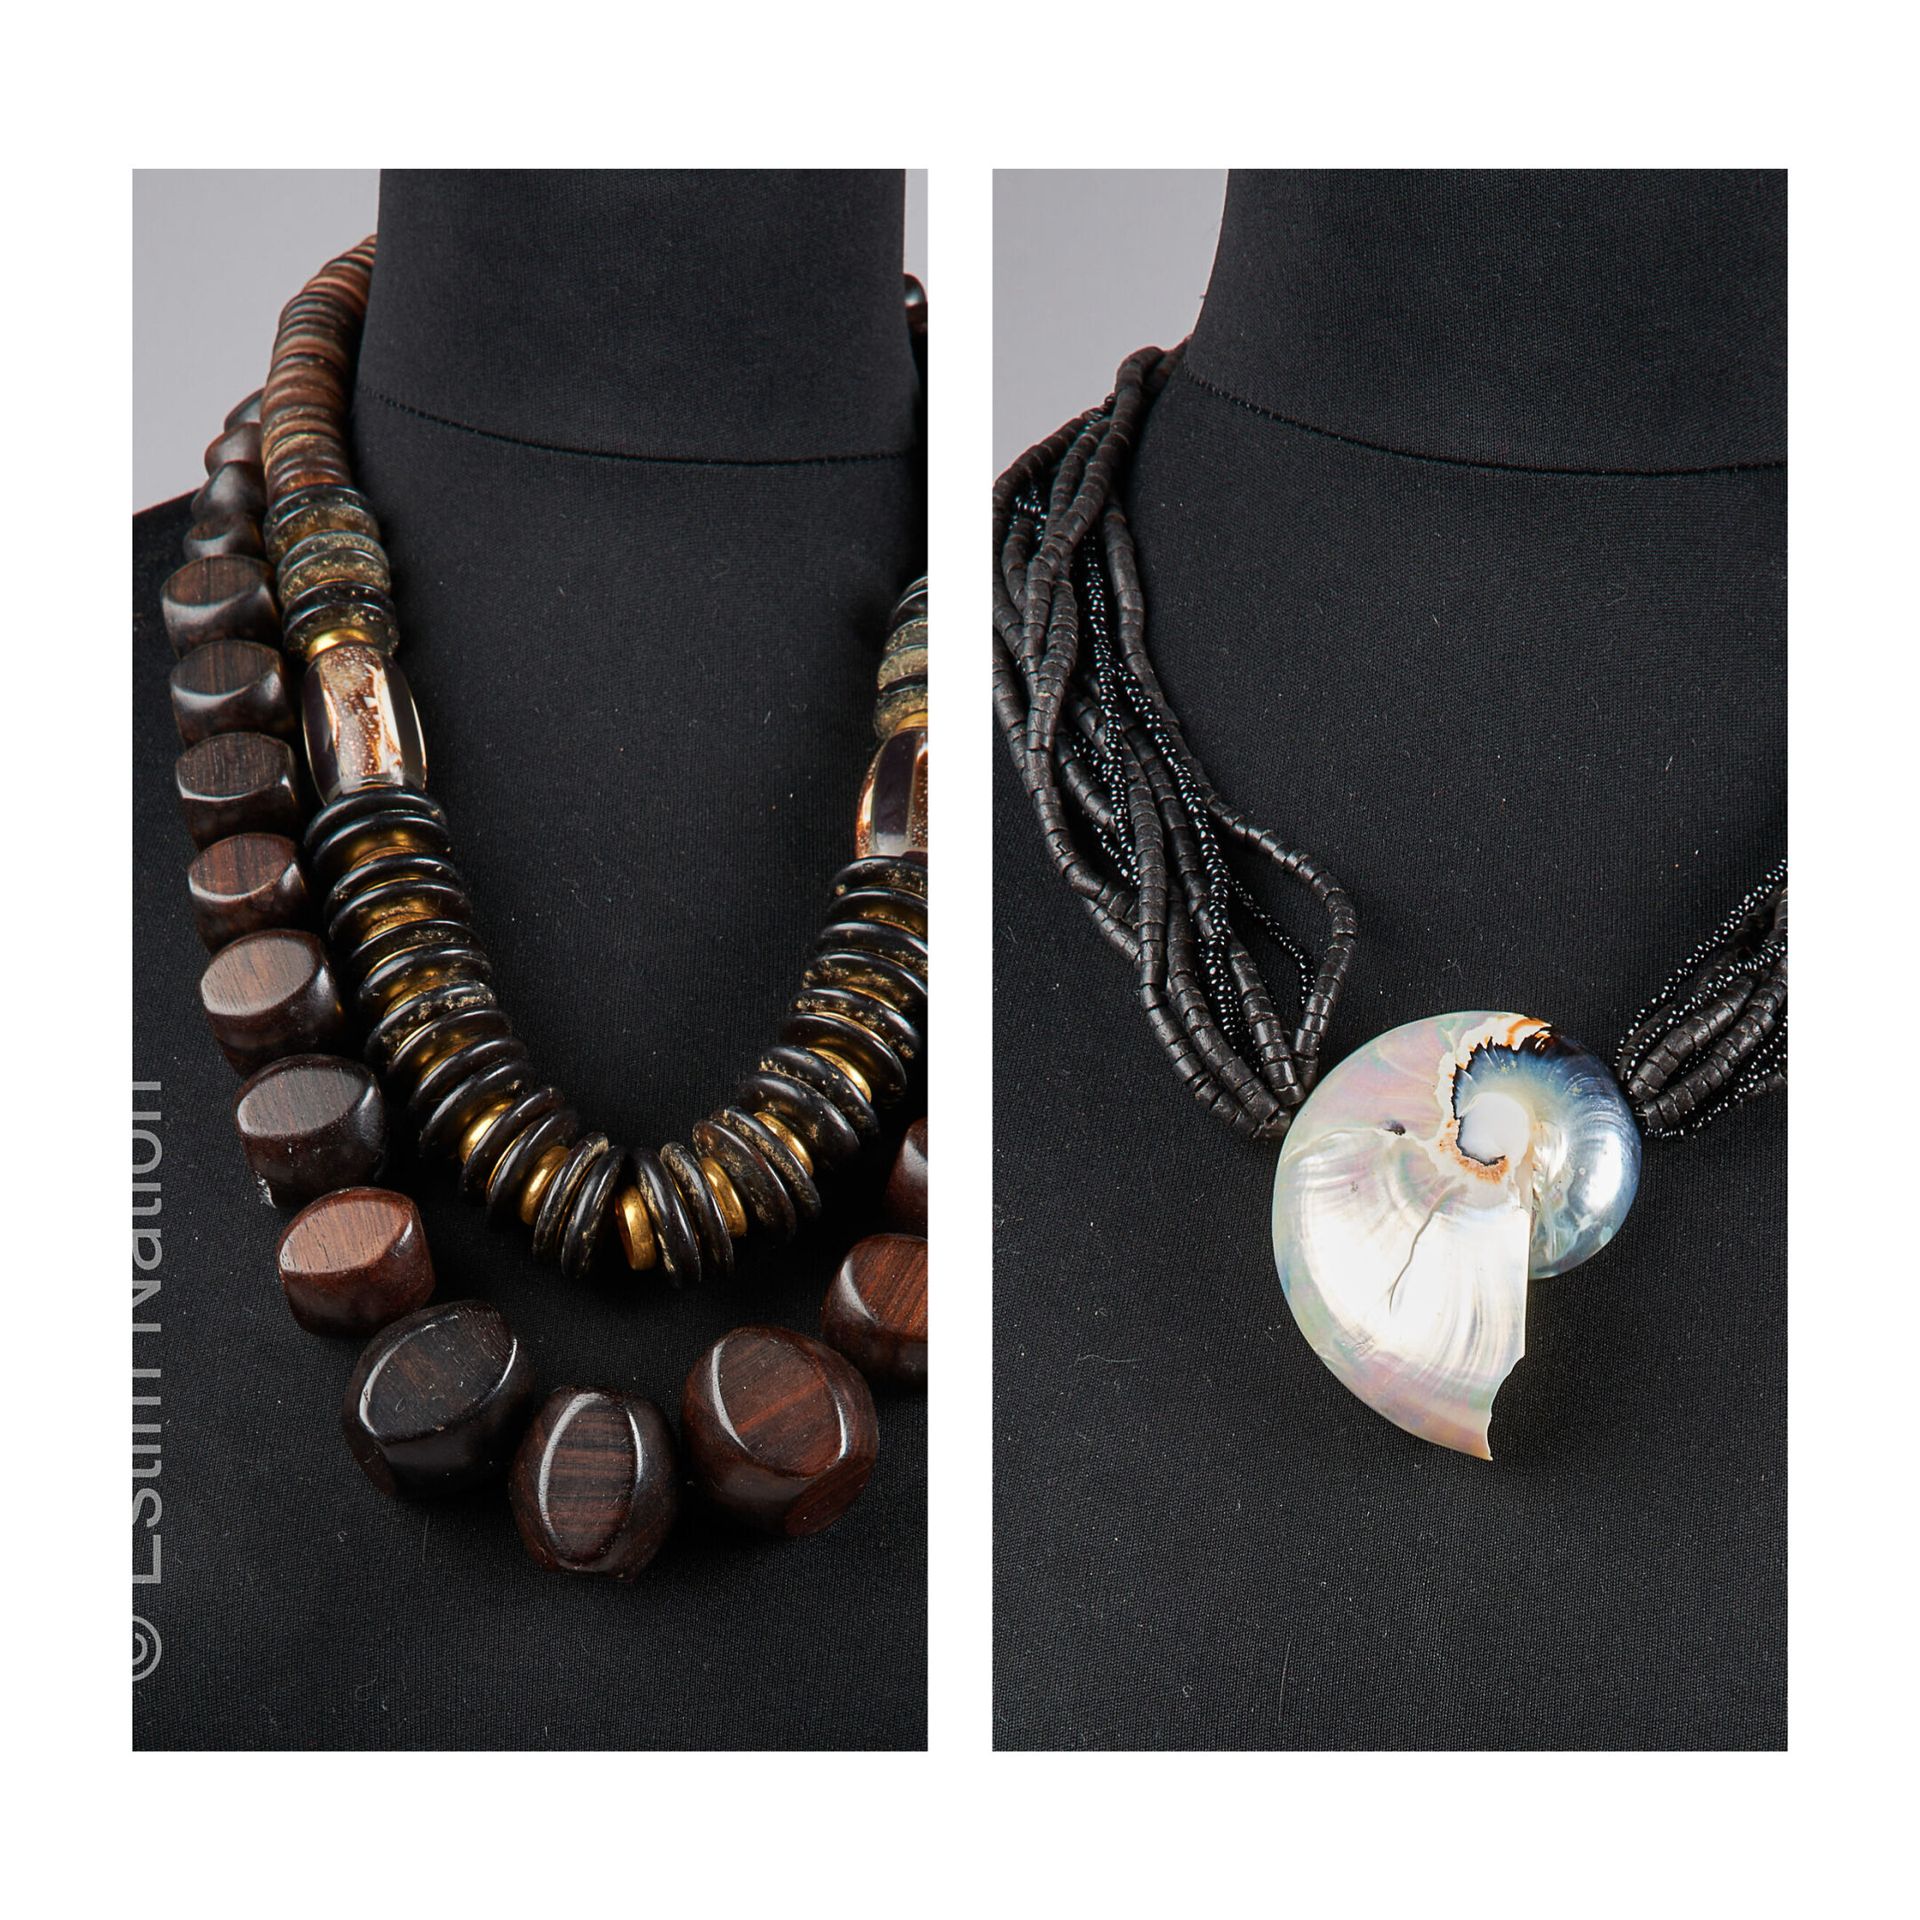 ANONYME 三只由木头和金属珠子制成的非洲灵感项链，其中一只拿着一个贝壳（贝壳上的小事故）（不保证状况）。